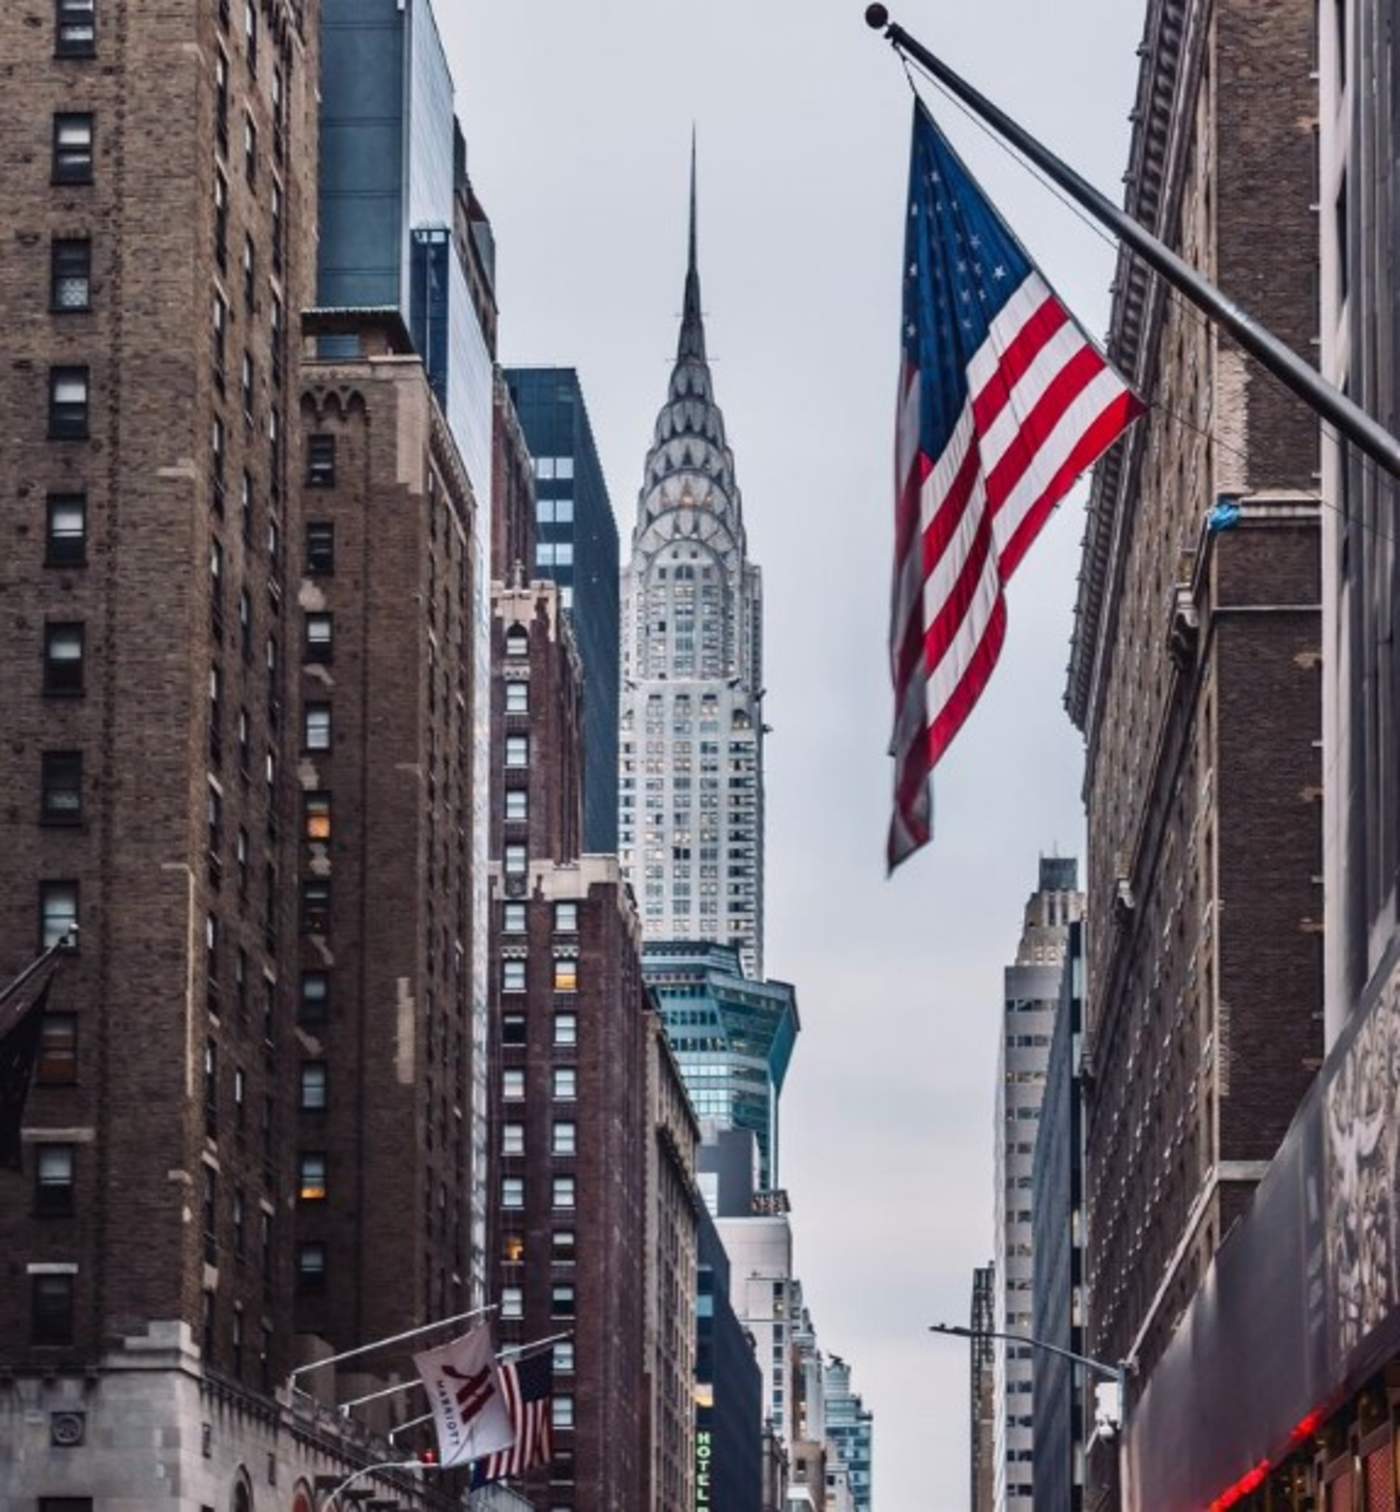 La firma inmobiliaria RFR Holding, que es propietaria de otros famosos inmuebles de Manhattan, y un socio extranjero pasarán a controlar el edificio Chrysler, según informó este viernes The Wall Street Journal. (ARCHIVO)